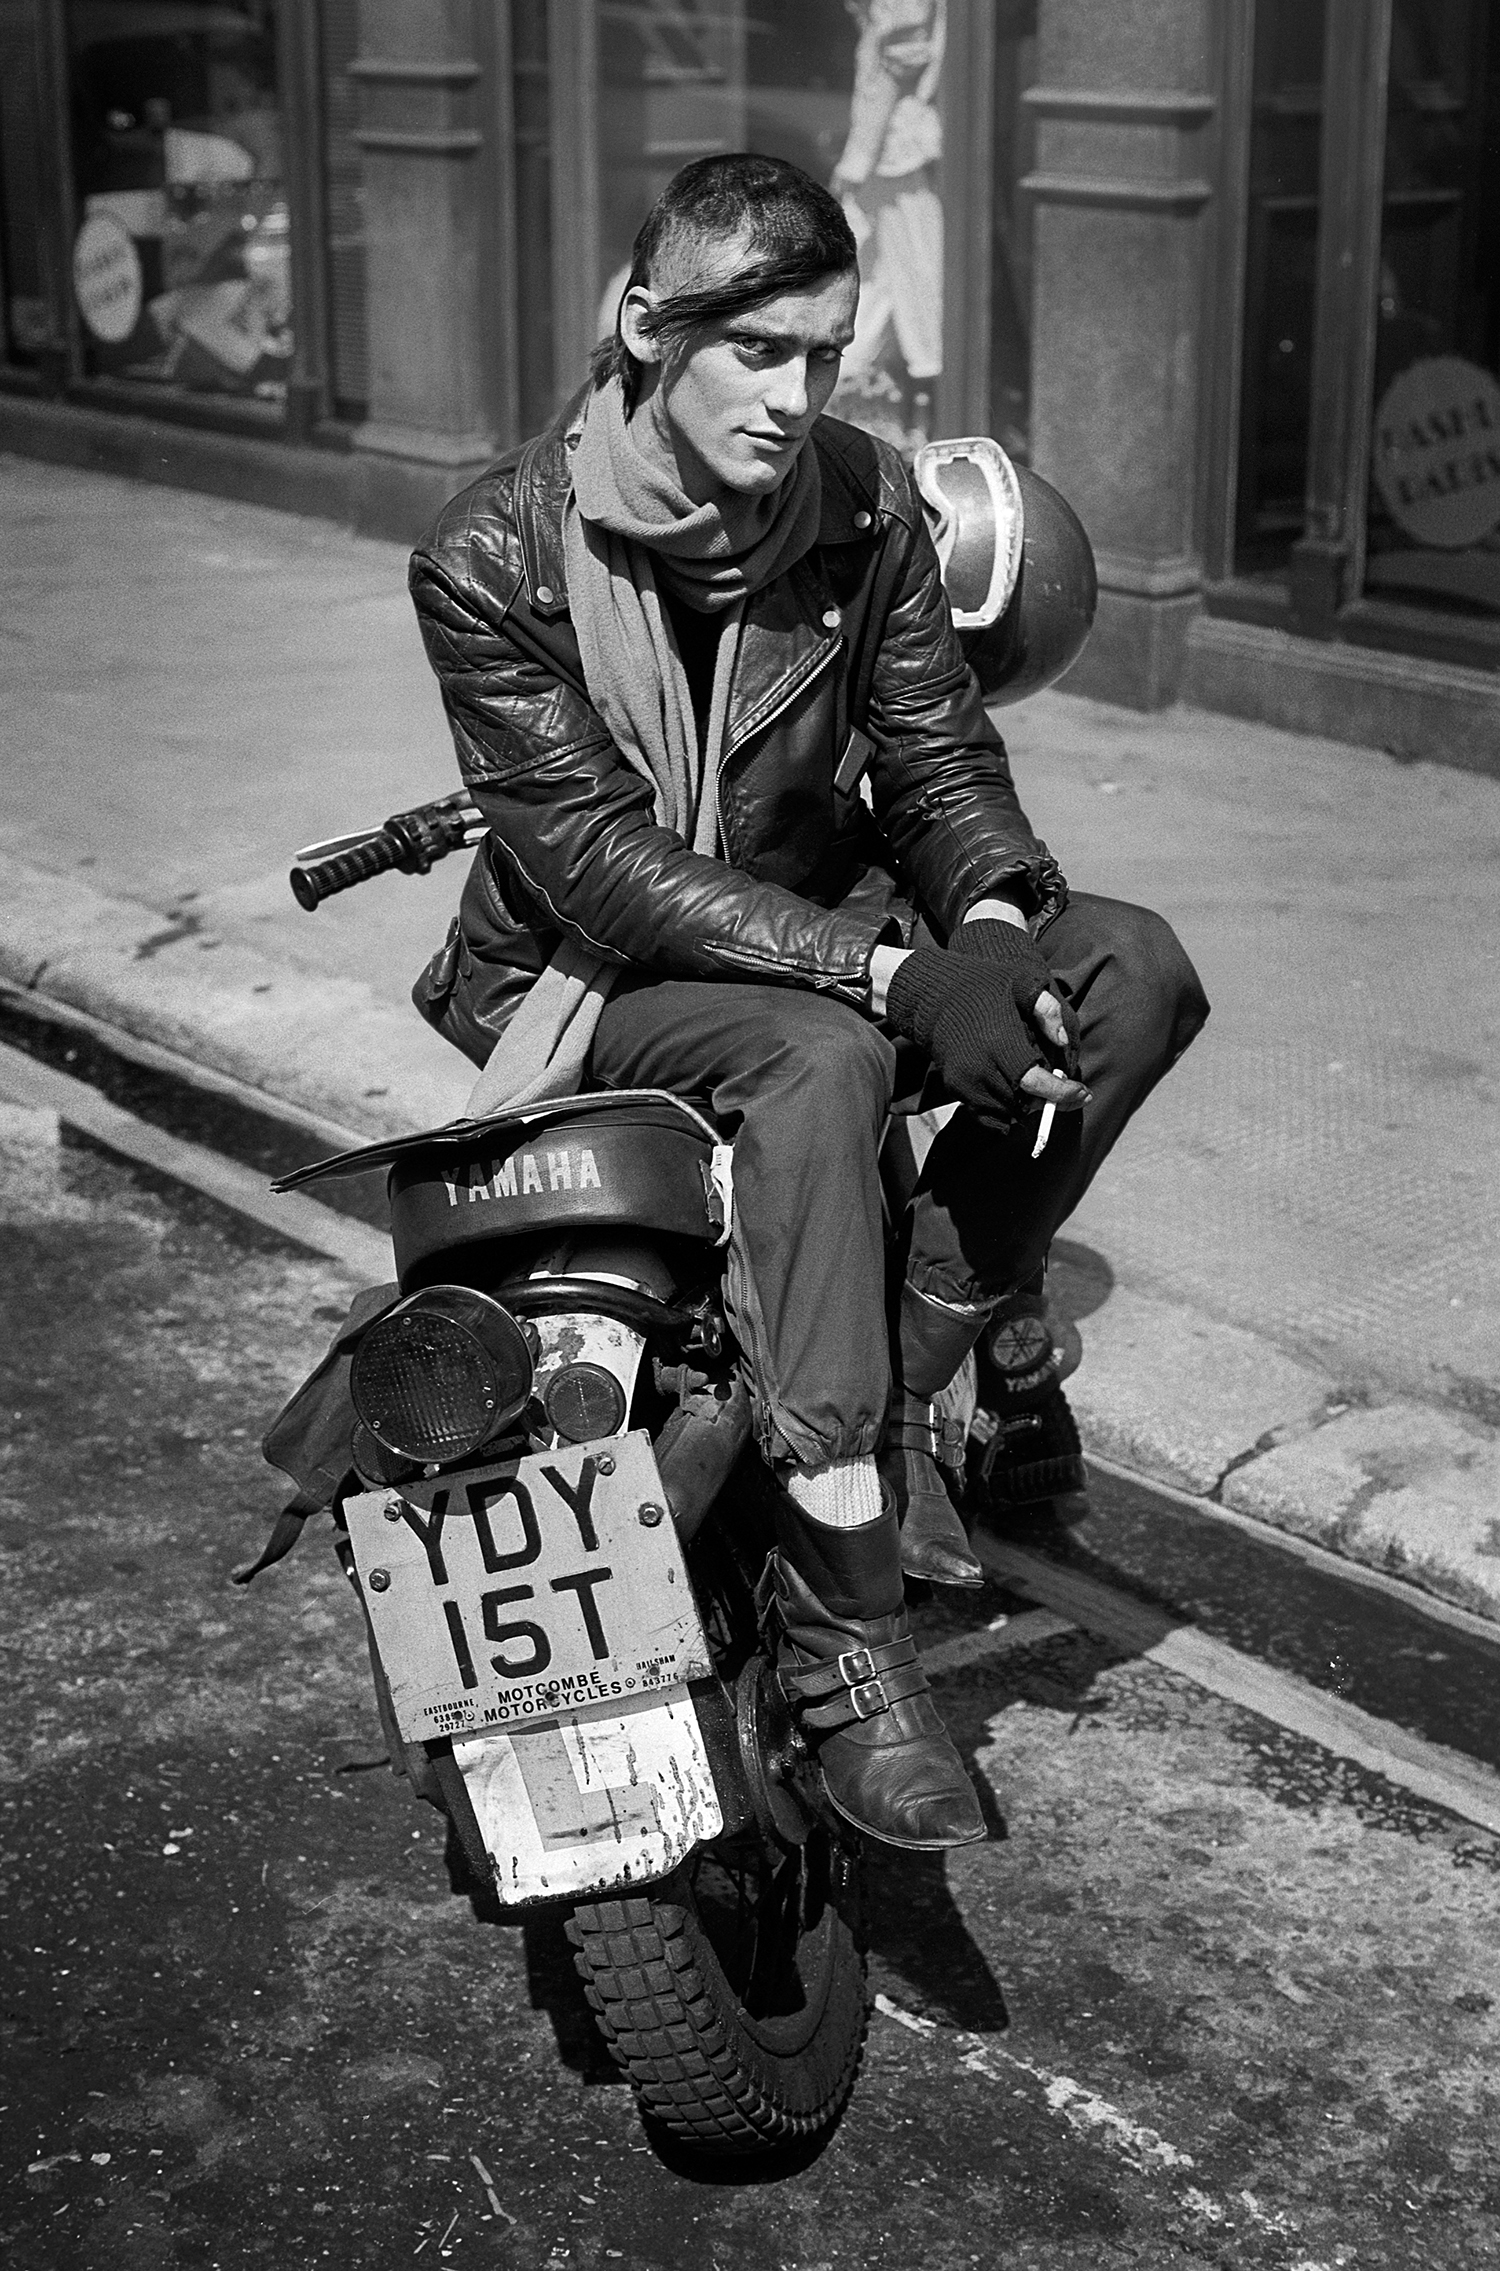 Bike messenger, Soho 1984.